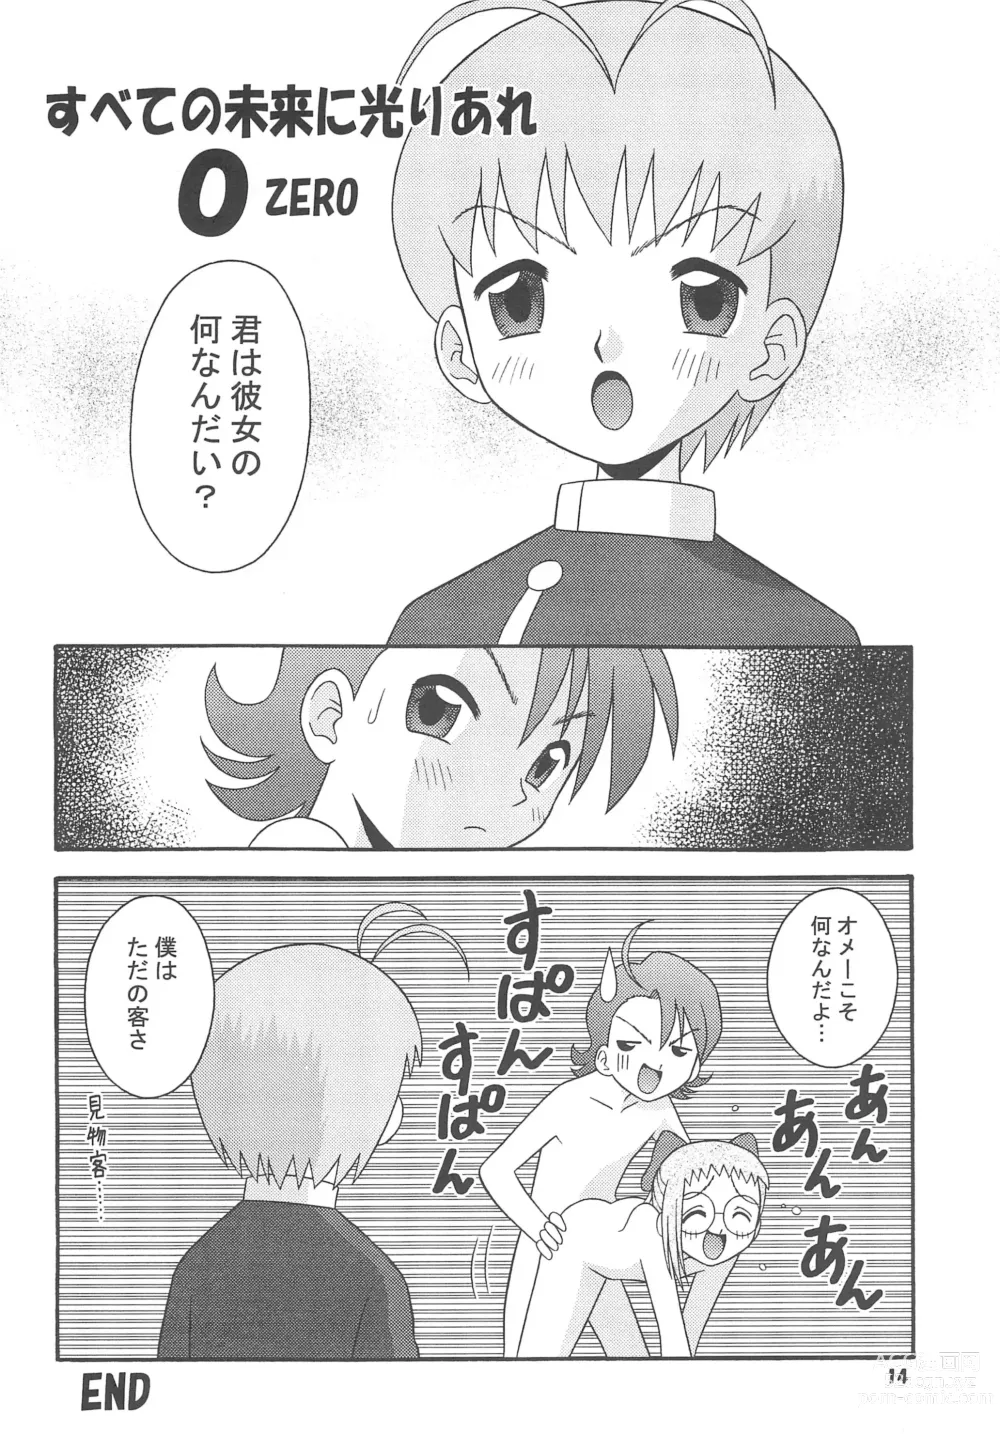 Page 16 of doujinshi Subete no Mirai ni Hikari are 4